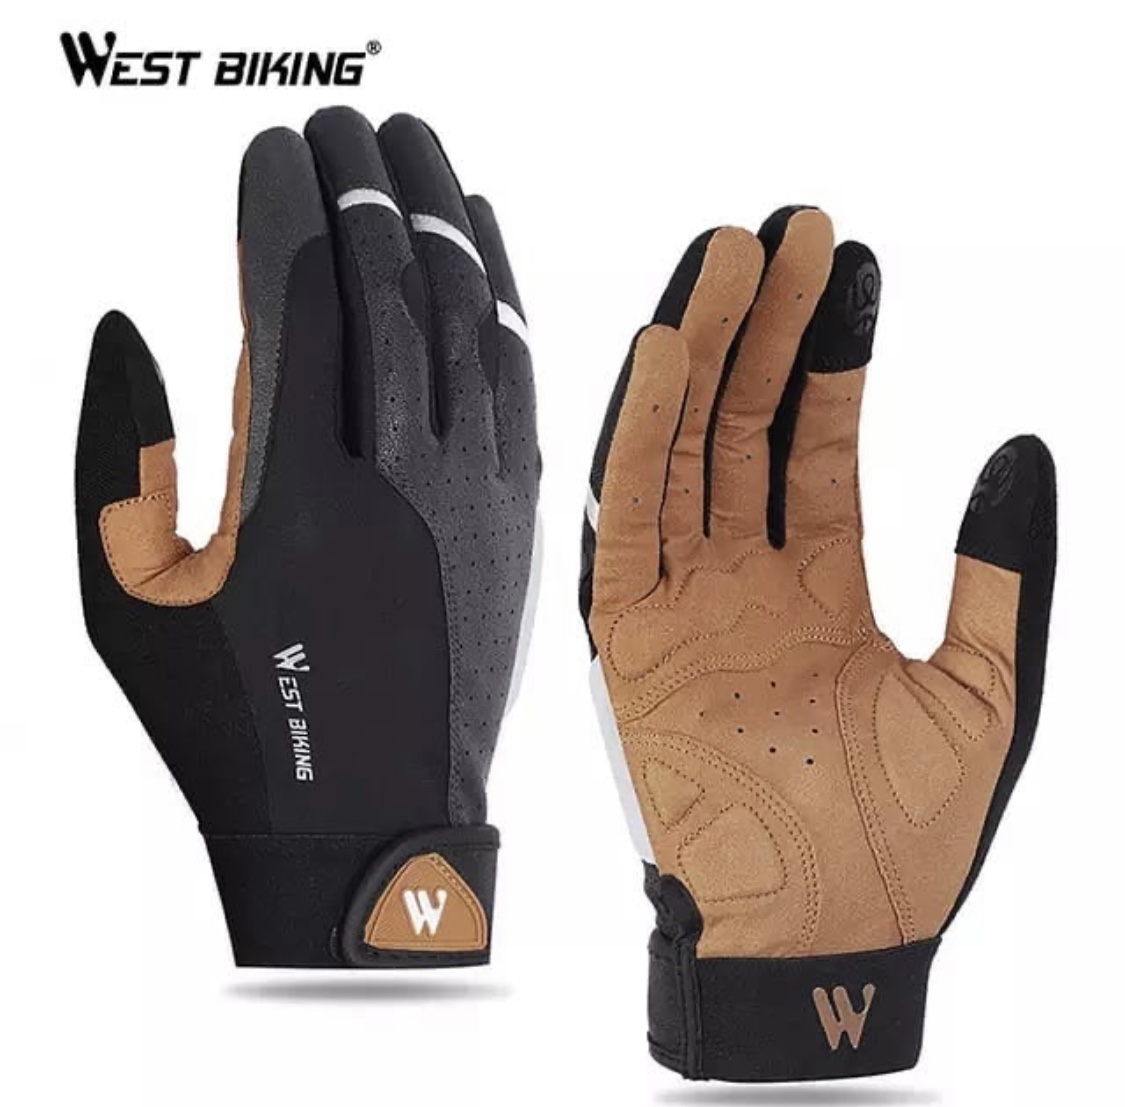 West Bike gloves